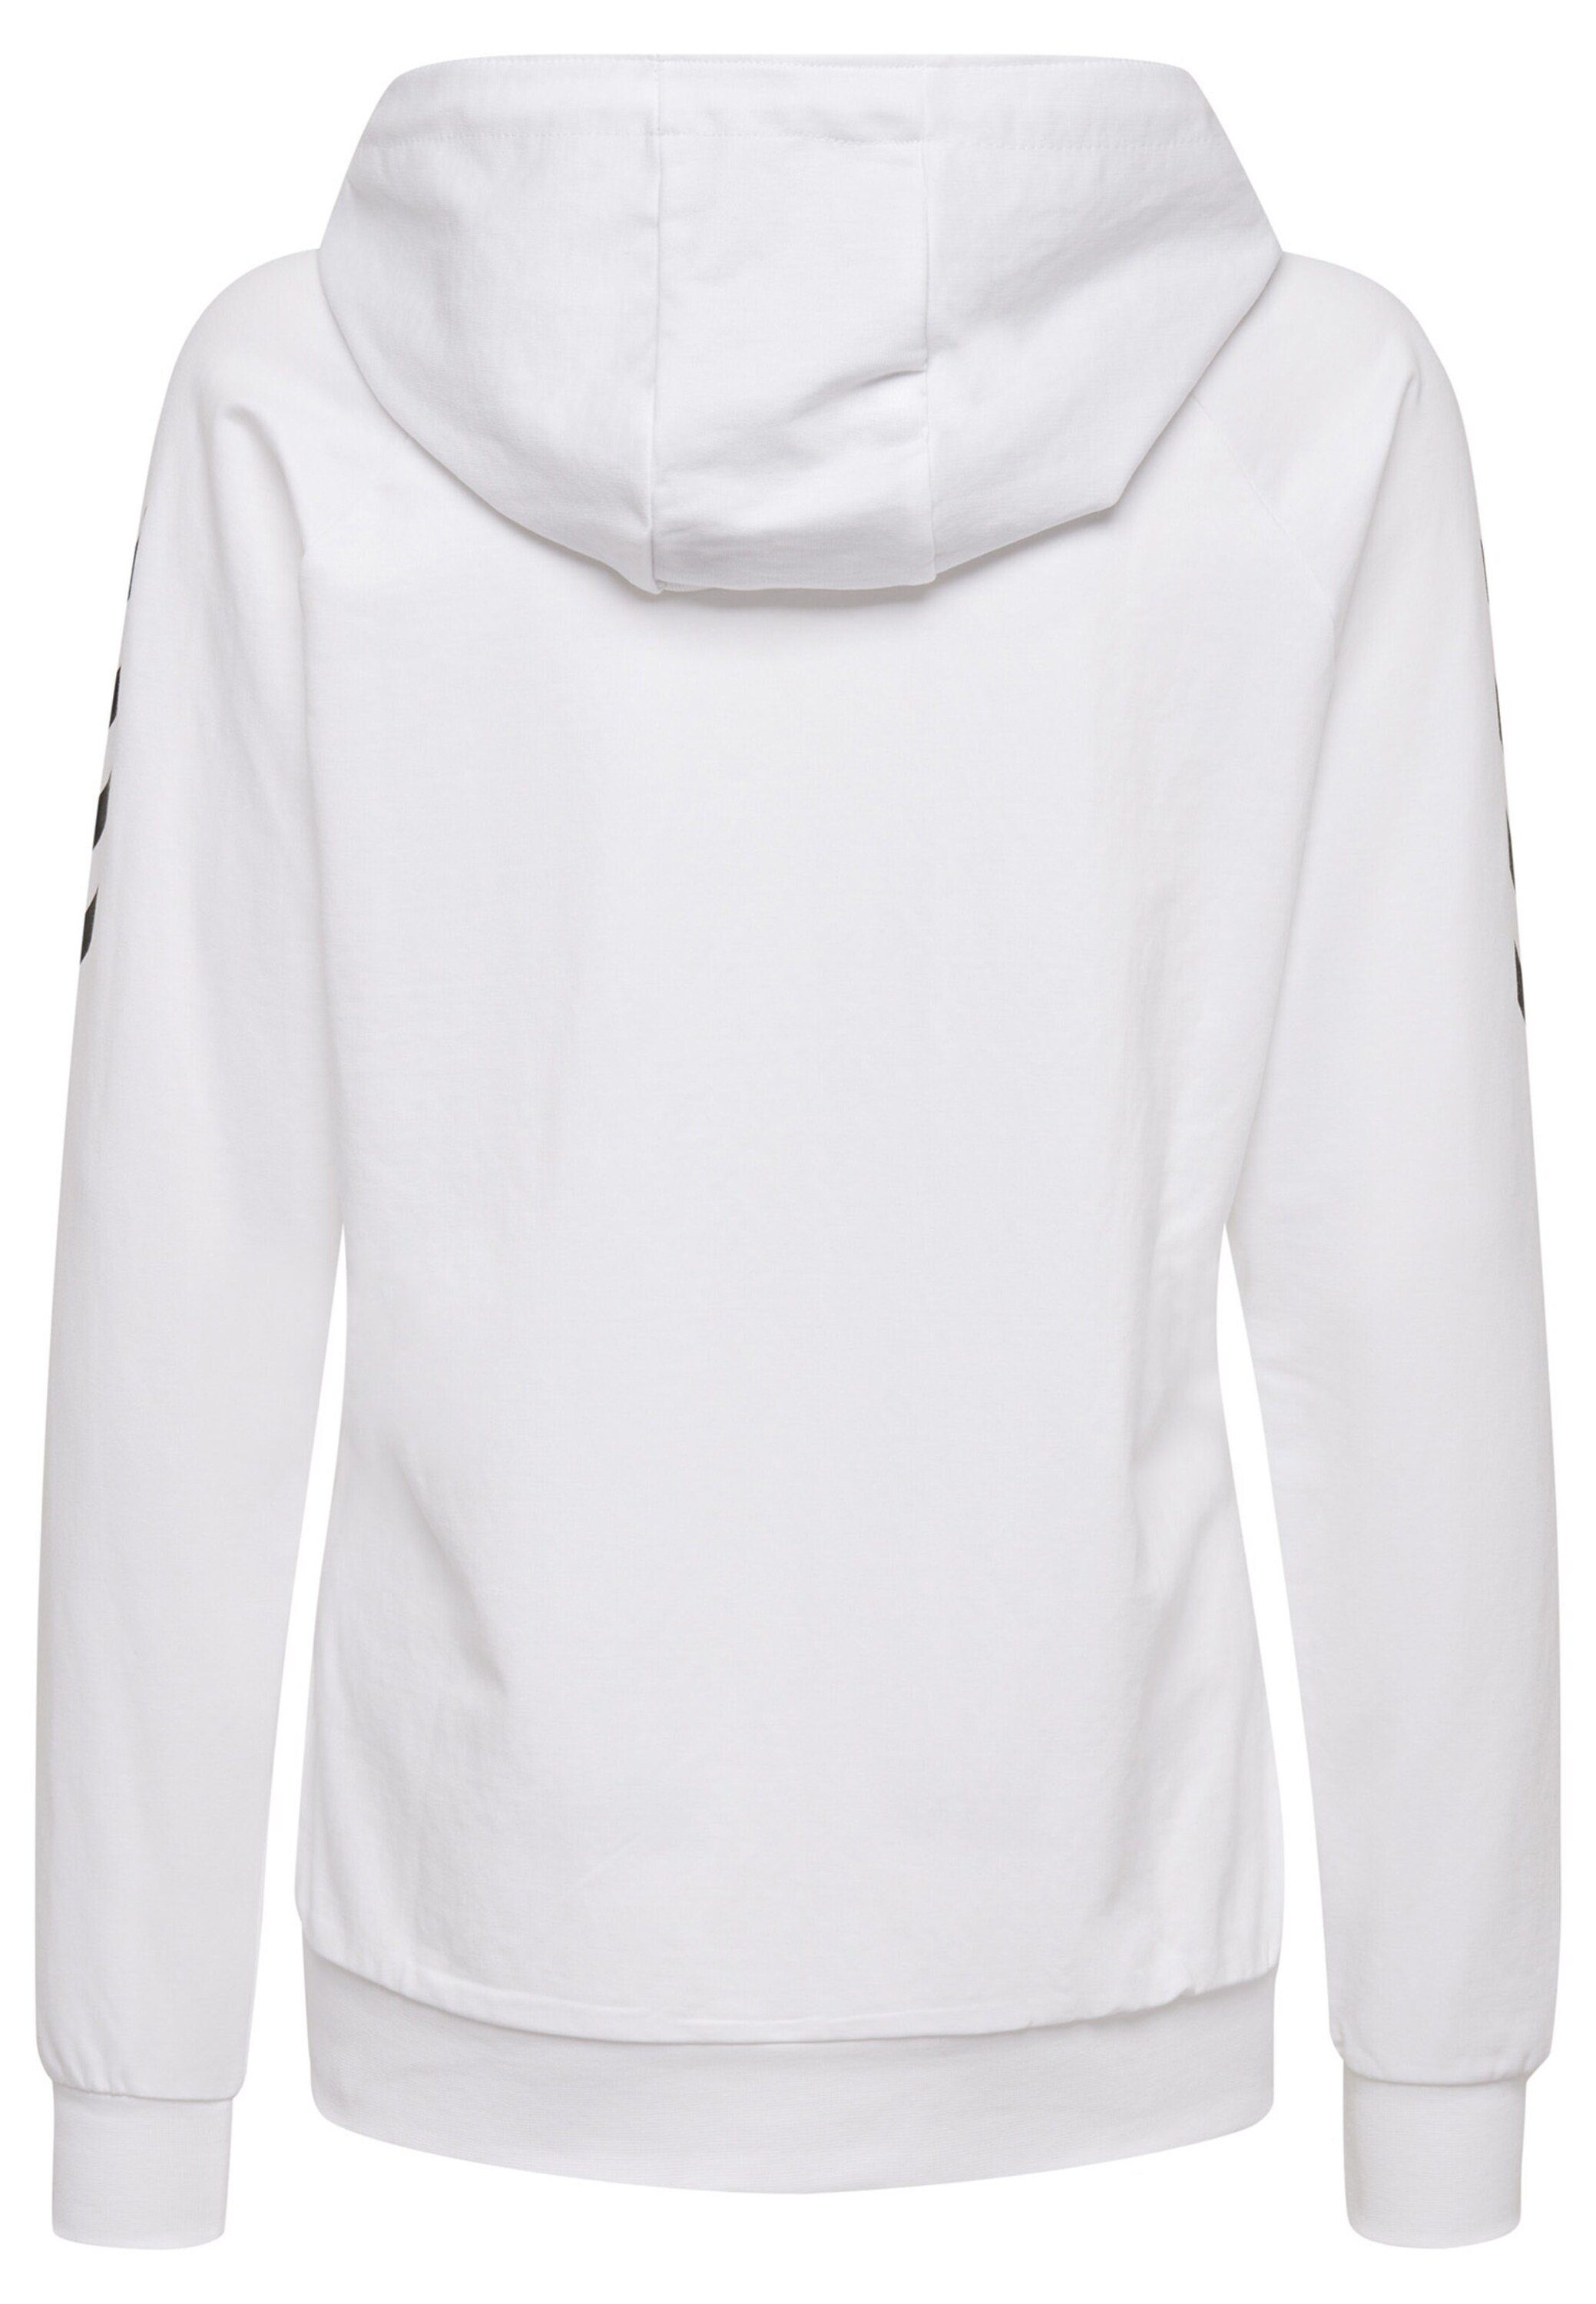 hummel Sweatshirt Plain/ohne Weiß Details (1-tlg)